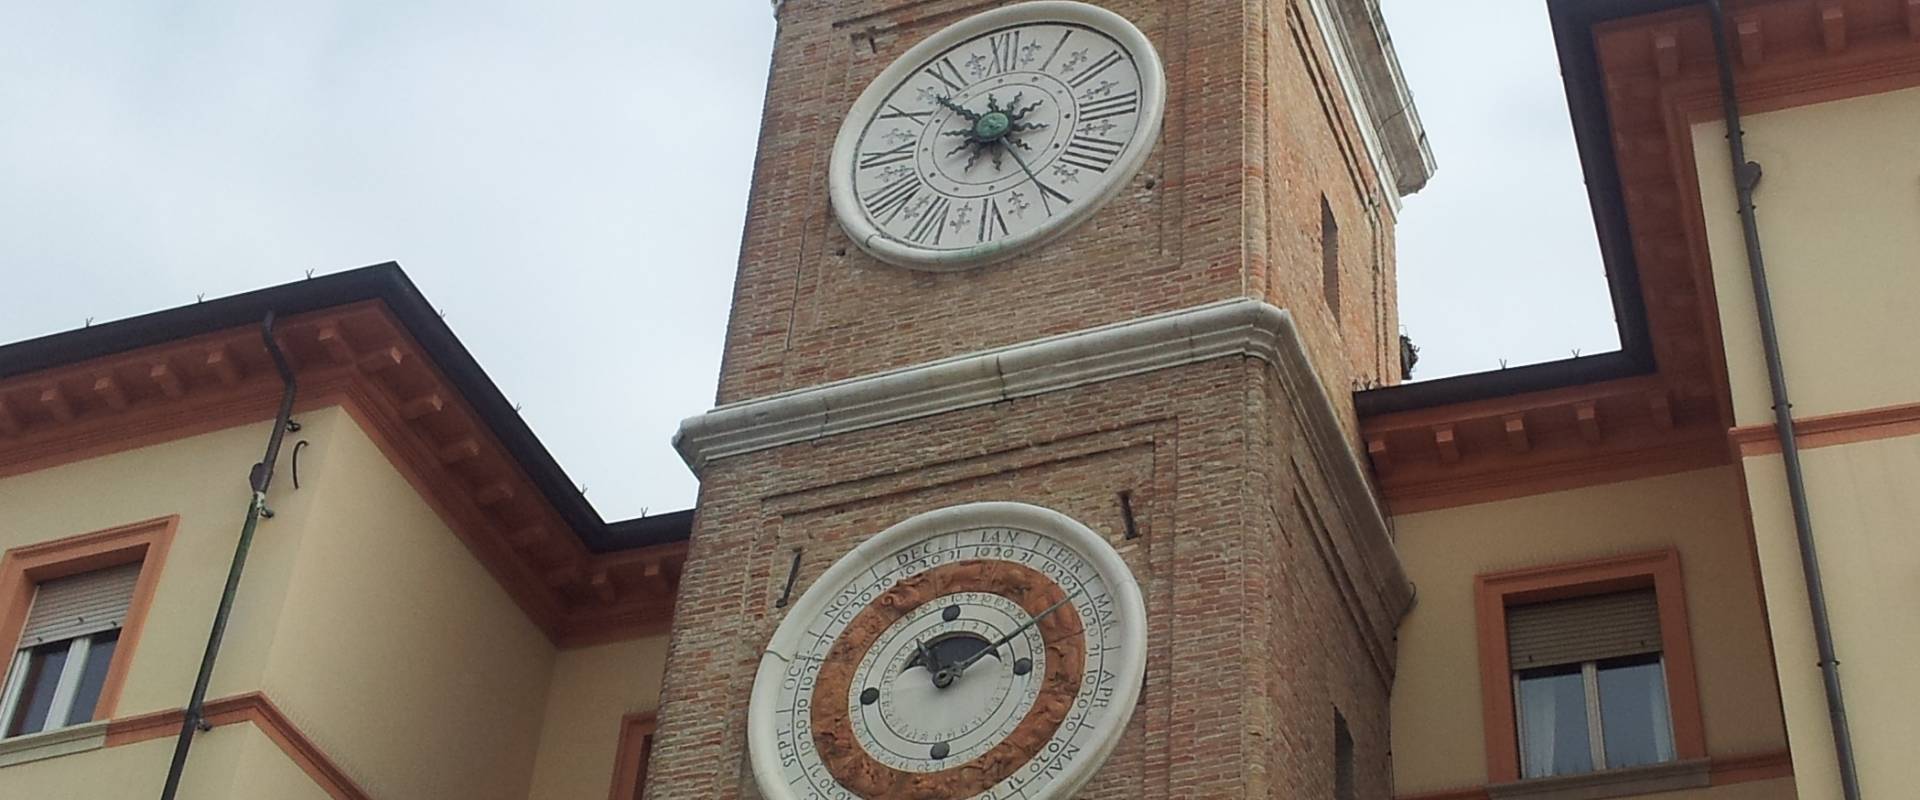 Torre dell'orologio in piazza 3 martiri foto di Opi1010